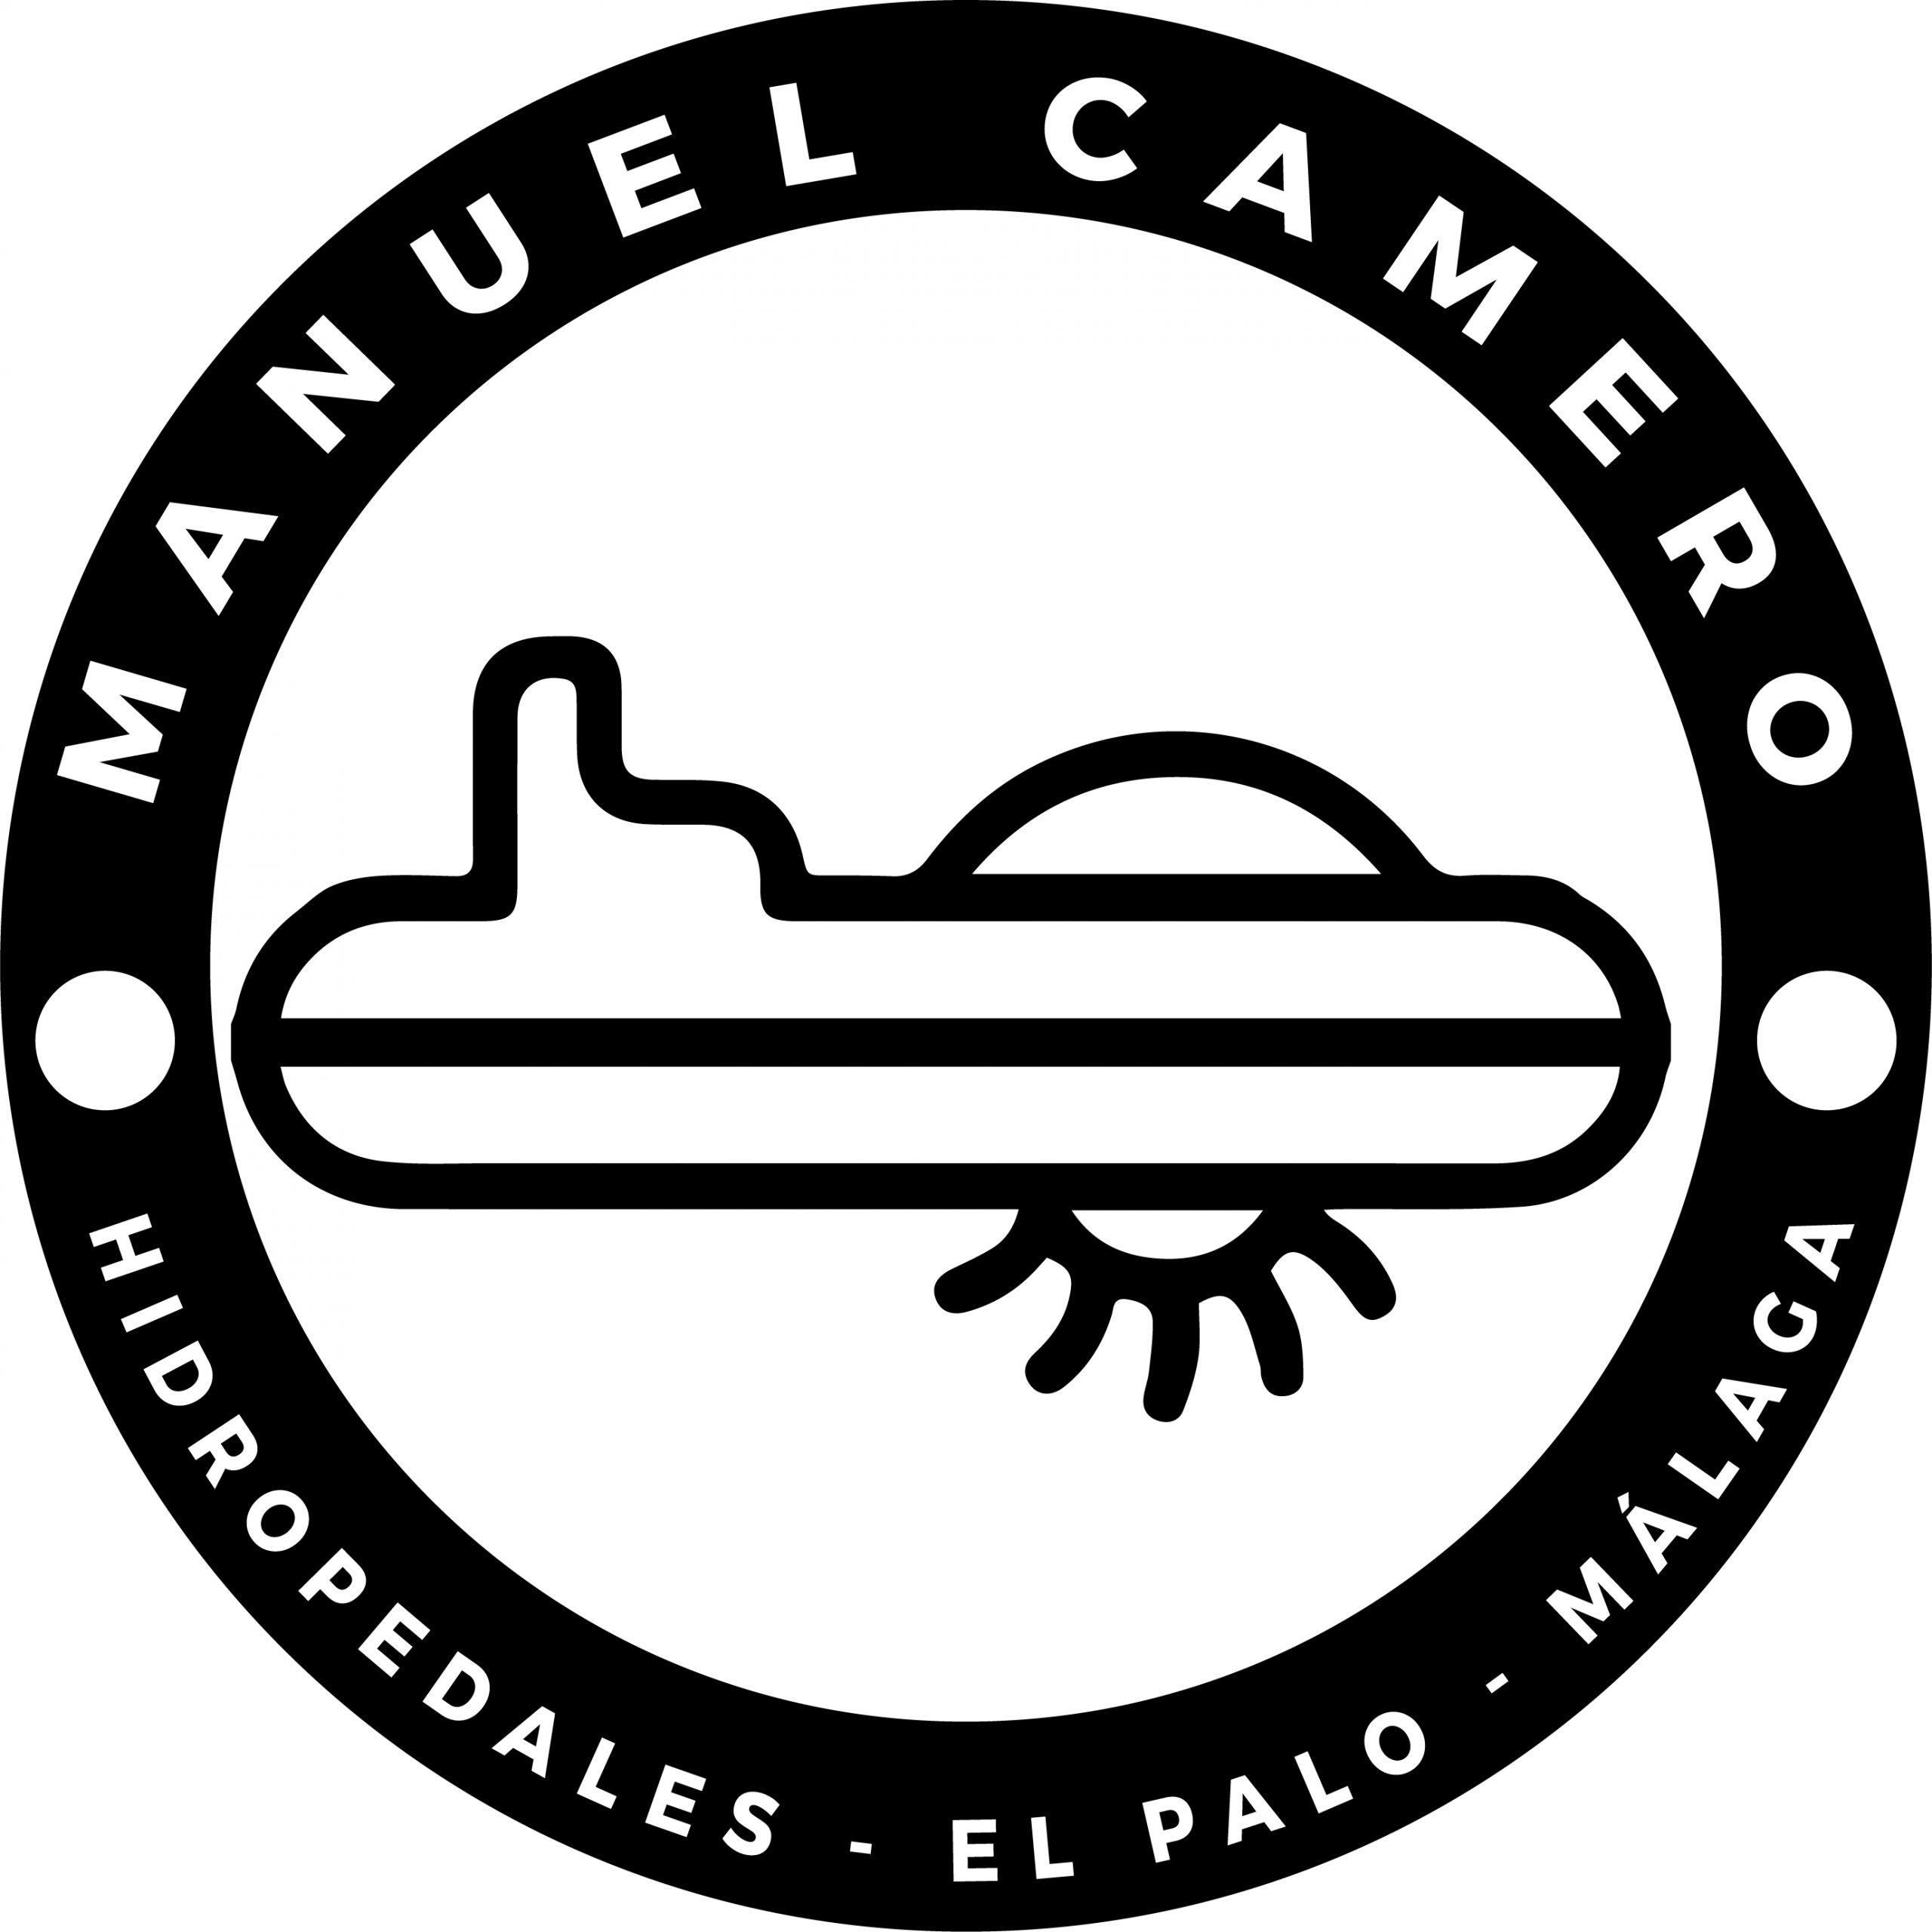 Alquiler de Hidropedales en Malaga: Manuel Camero La Rusa